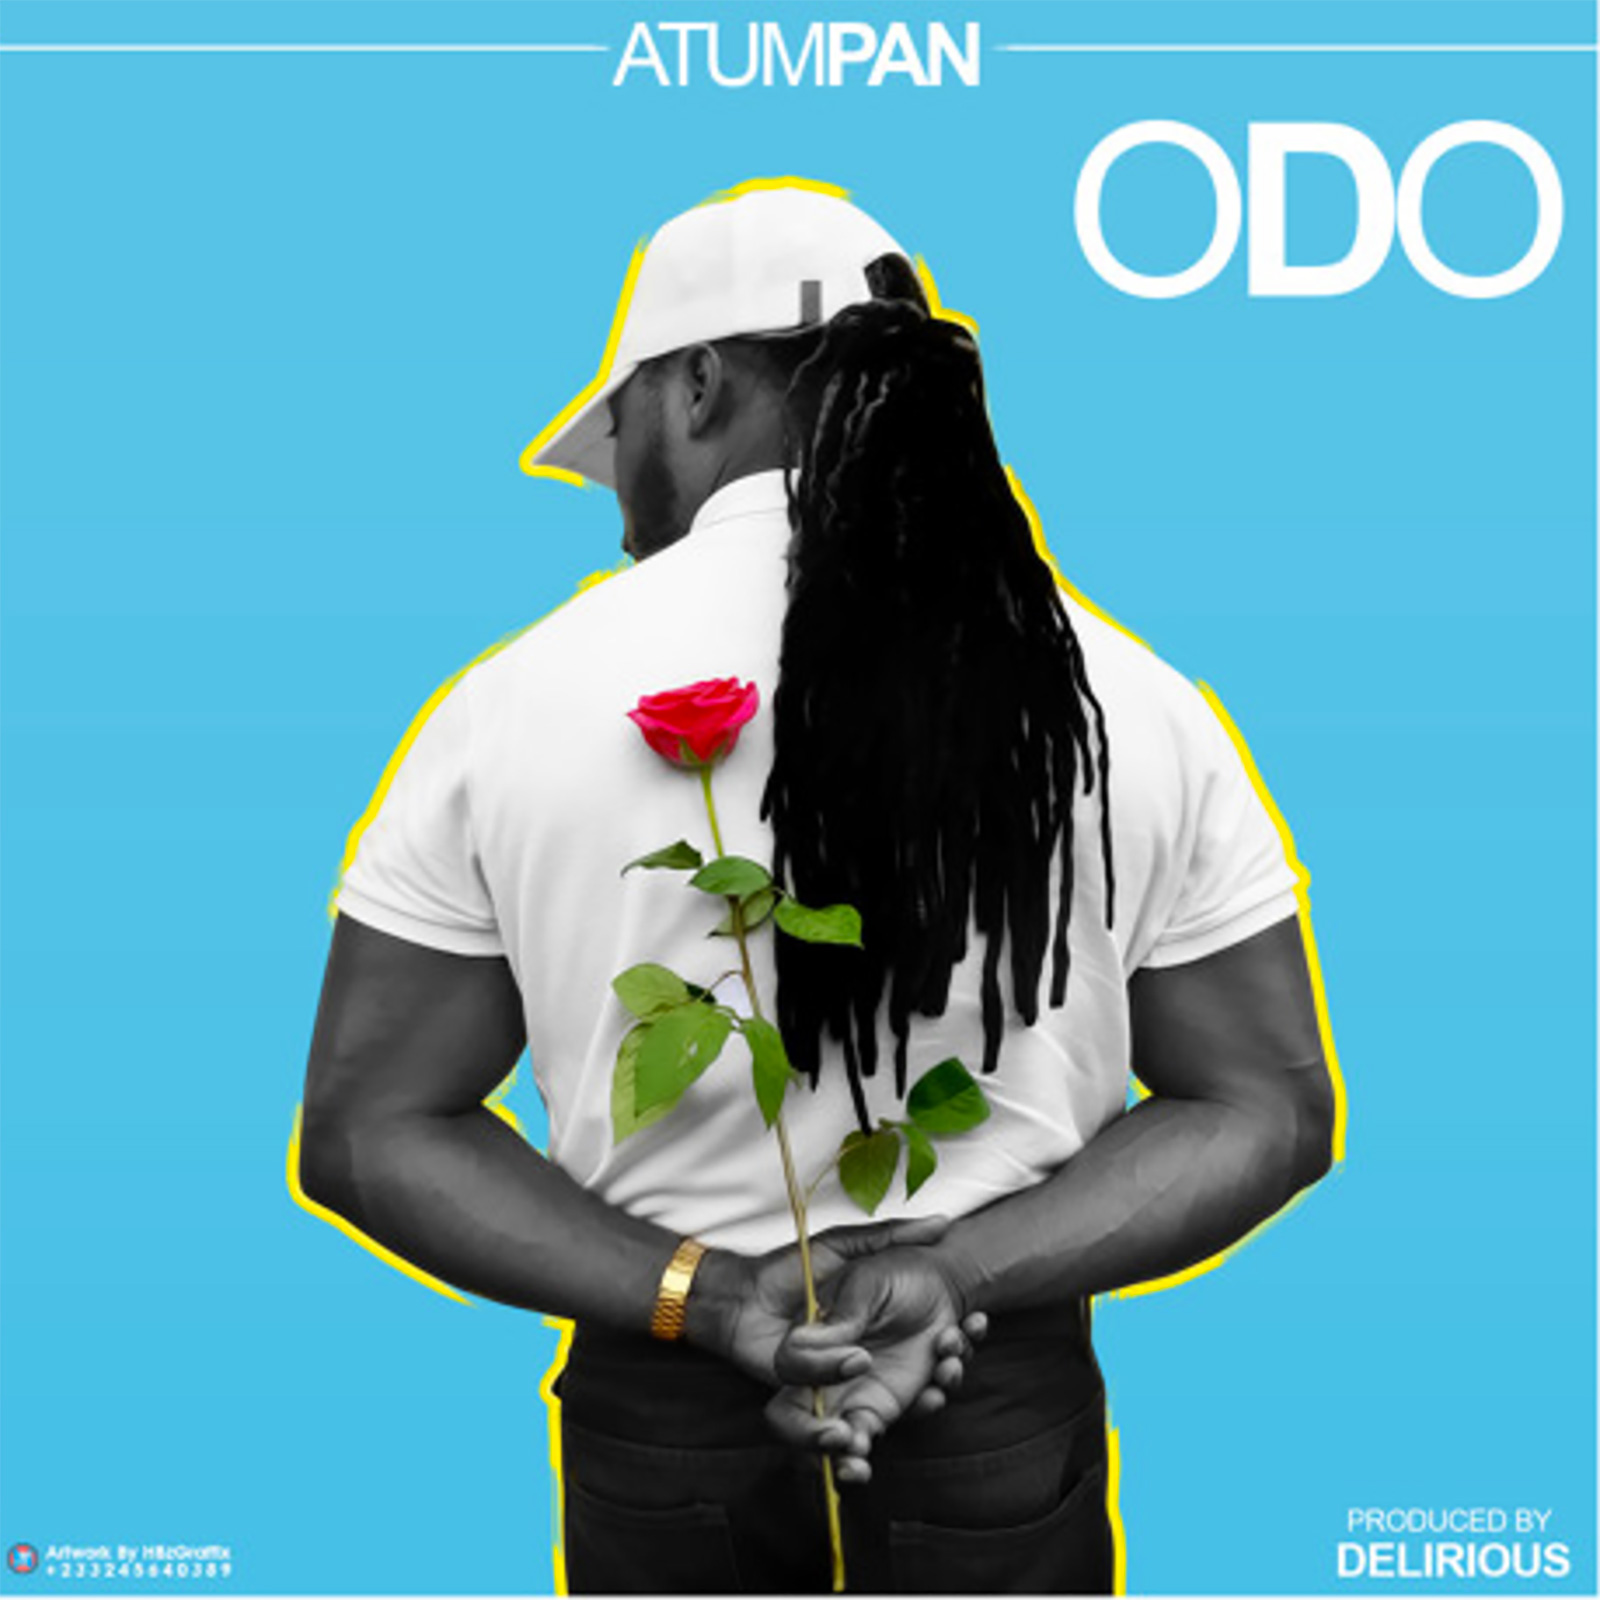 Odo by Atumpan